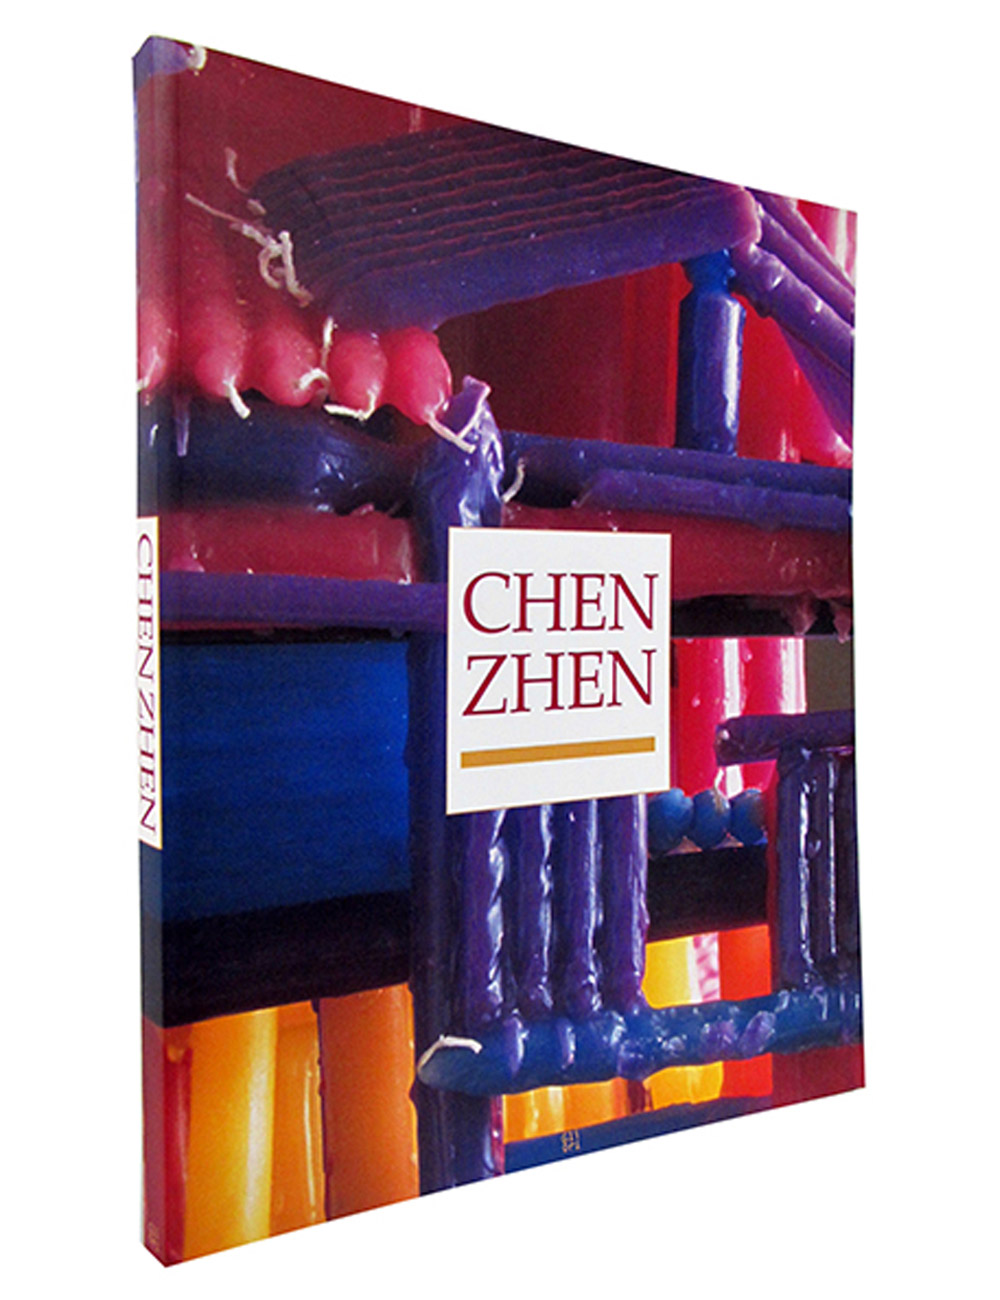 Galleria Continua - CHEN ZHEN, 2003